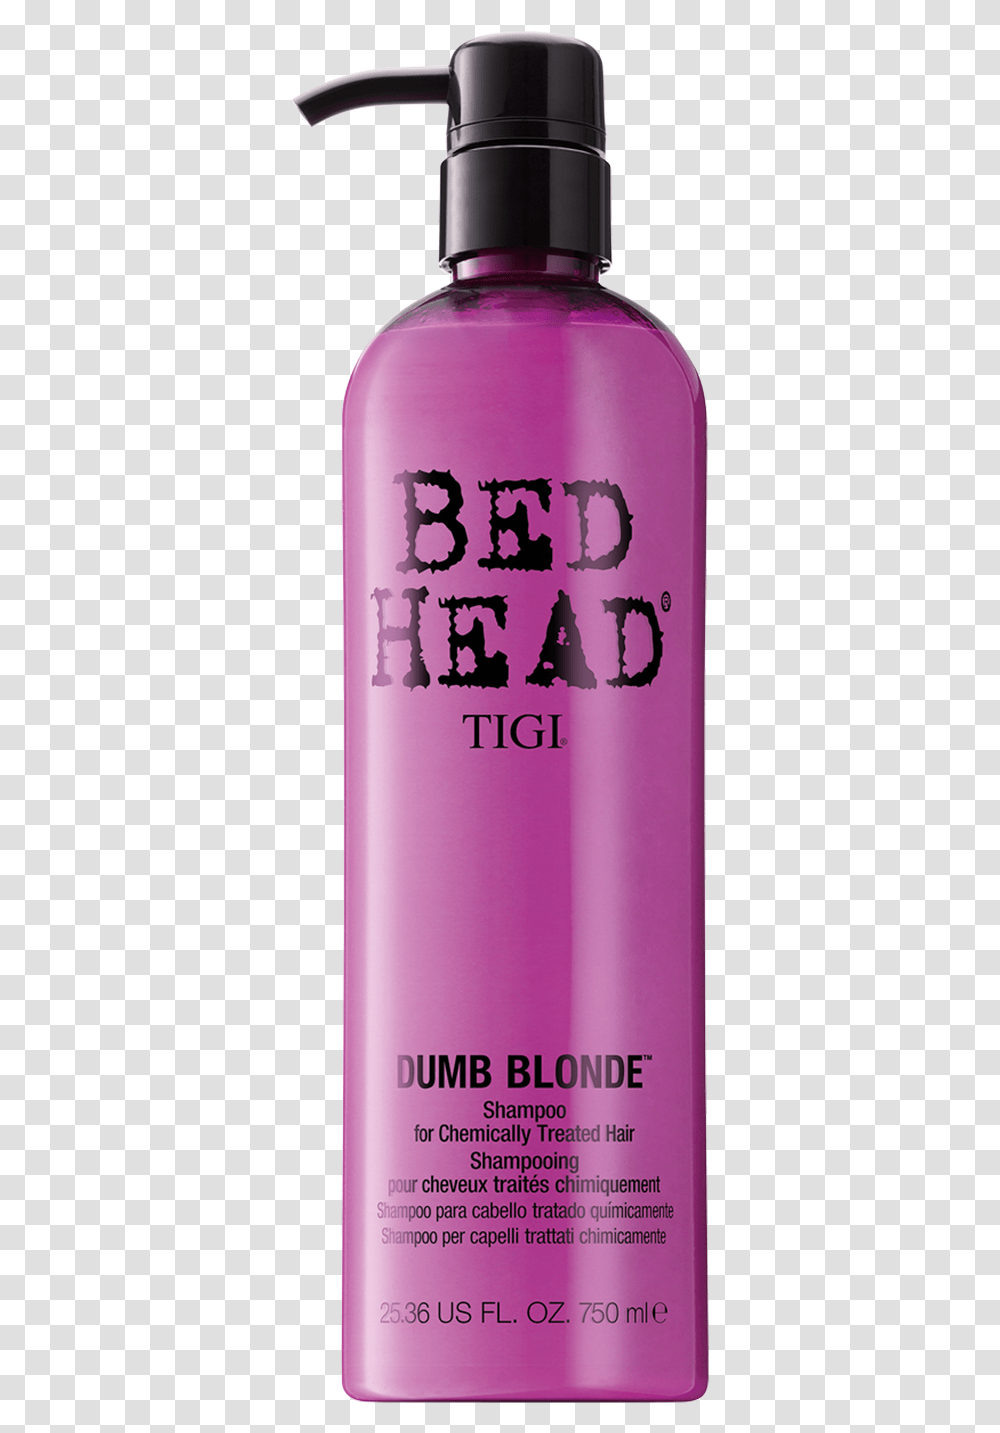 Dumb Blonde Shampoo Tigi Bed Head, Aluminium, Tin, Can, Cosmetics Transparent Png